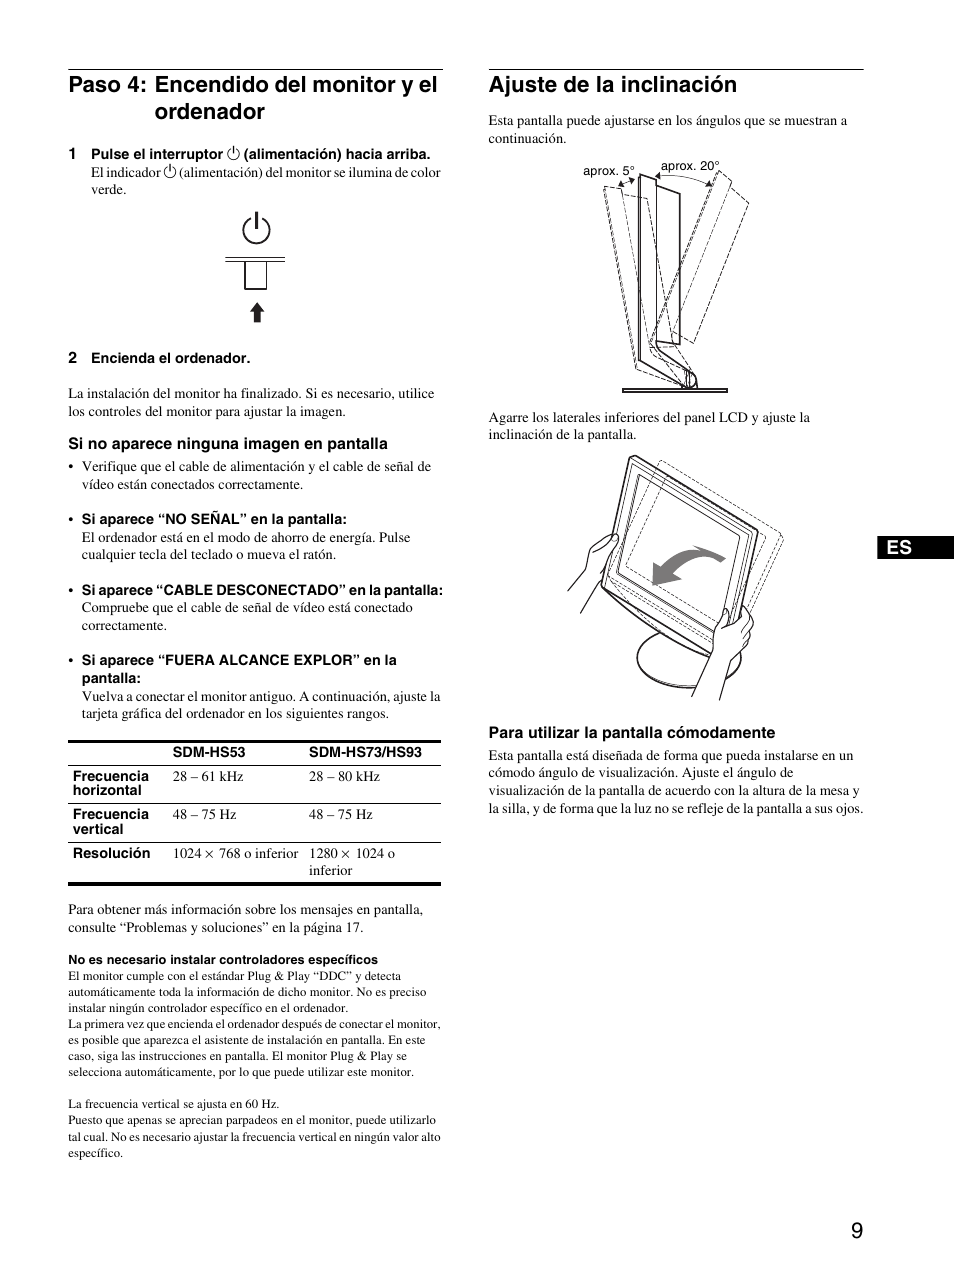 Paso 4: encendido del monitor y el ordenador, Ajuste de la inclinación | Sony SDM-HS73 Manual del usuario | Página 11 / 21